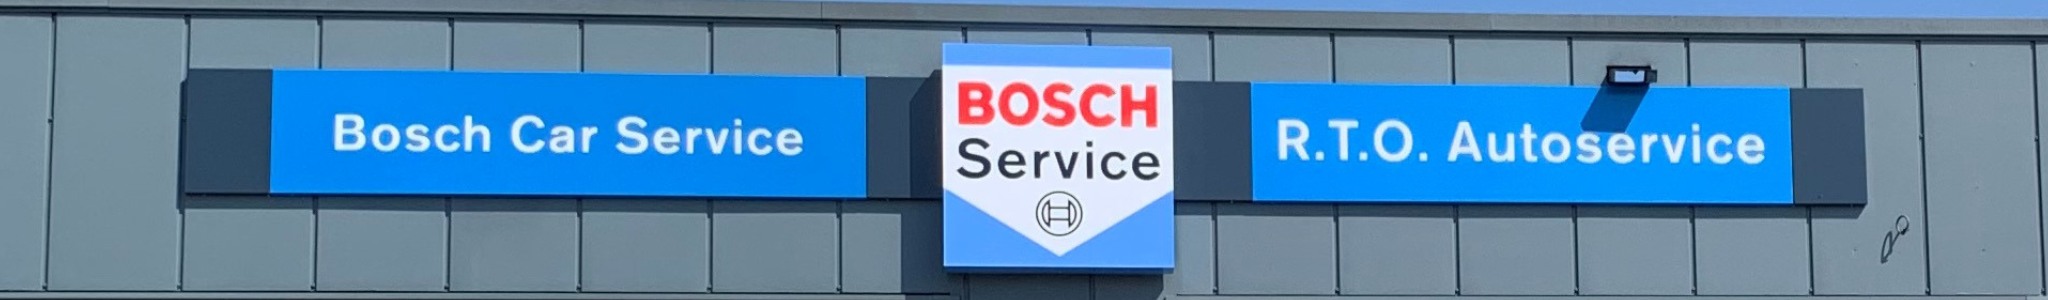 Bosch Car Service werkplaats auto reparatie repareren onderhoud apk keuring RT ABosch Car Service werkplaats auto reparatie repareren onderhoud apk keuring RTO Autoservice Valthermond Stadskanaal